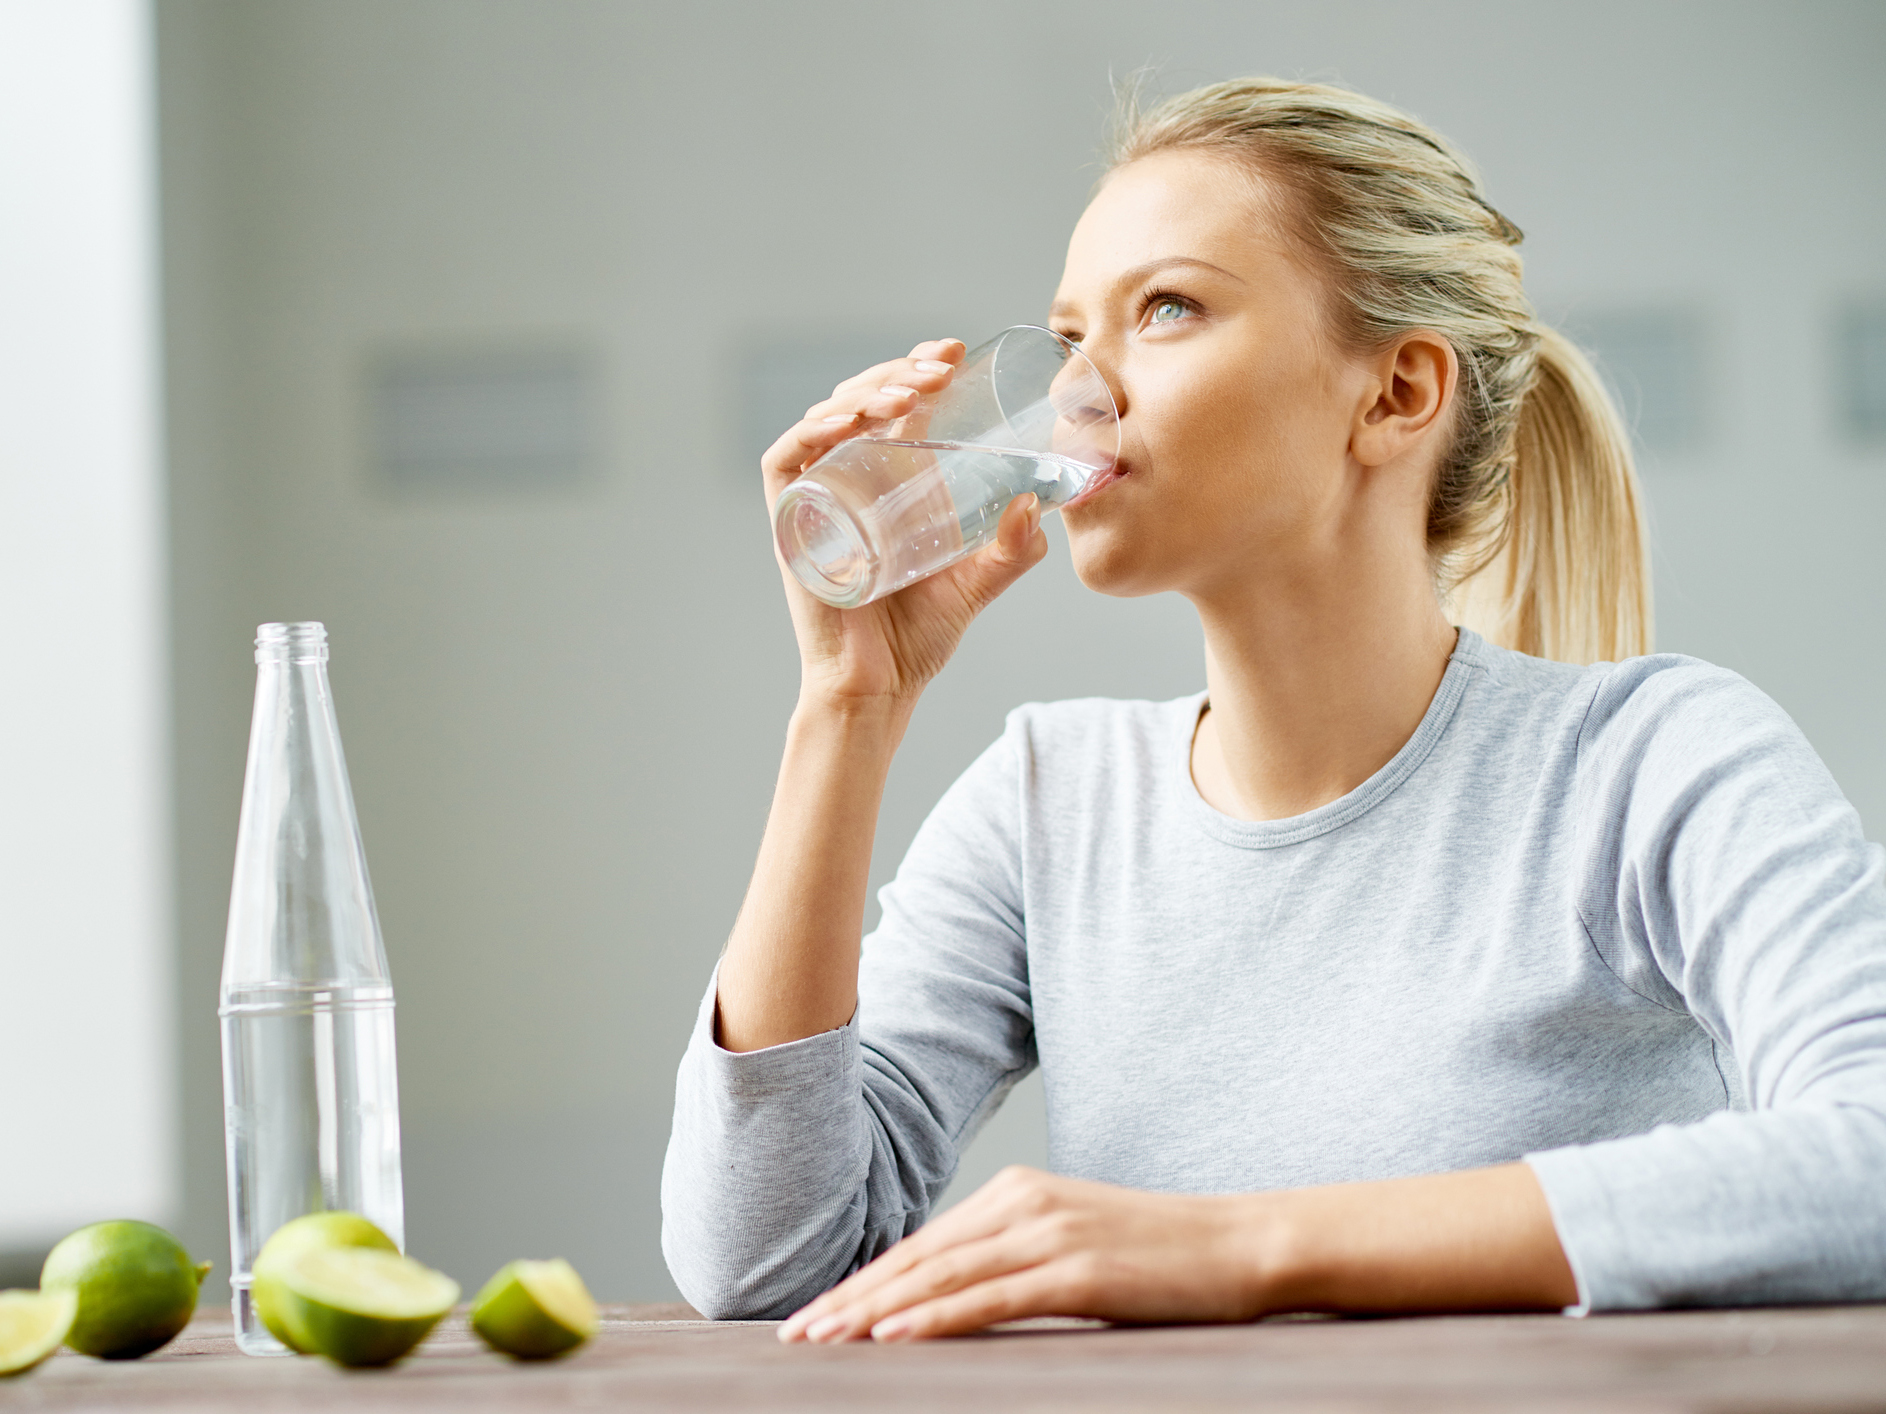 Uống nước khi đói và 12 lợi ích có thể bạn chưa biết! - Ảnh 2.